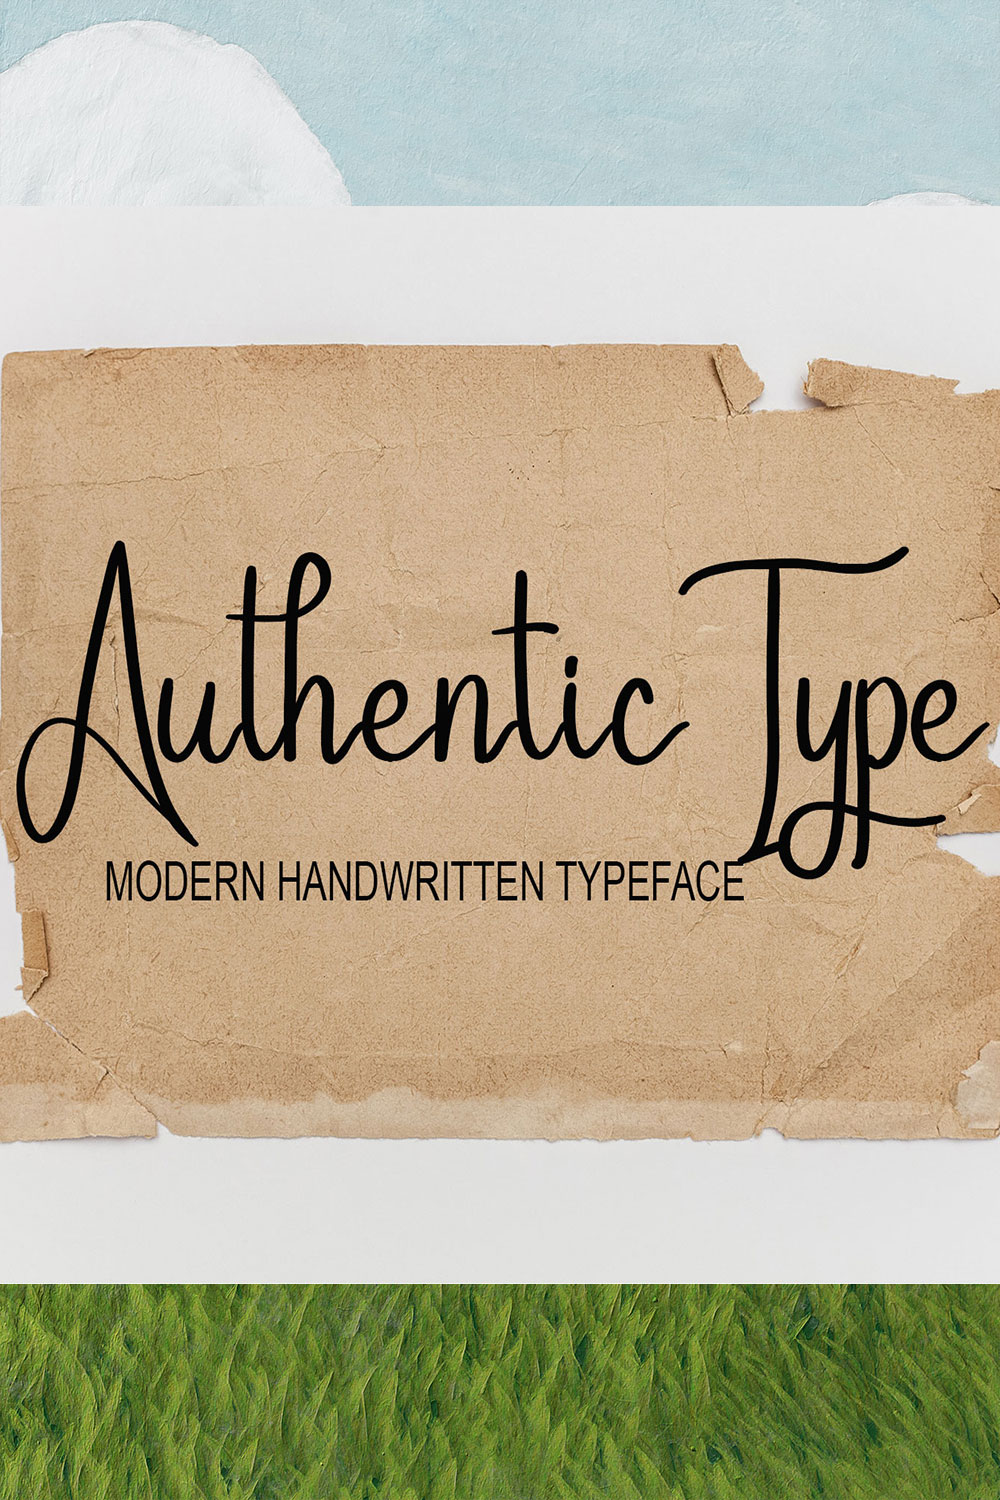 Authentic Type Script Signature Font Pinterest image.